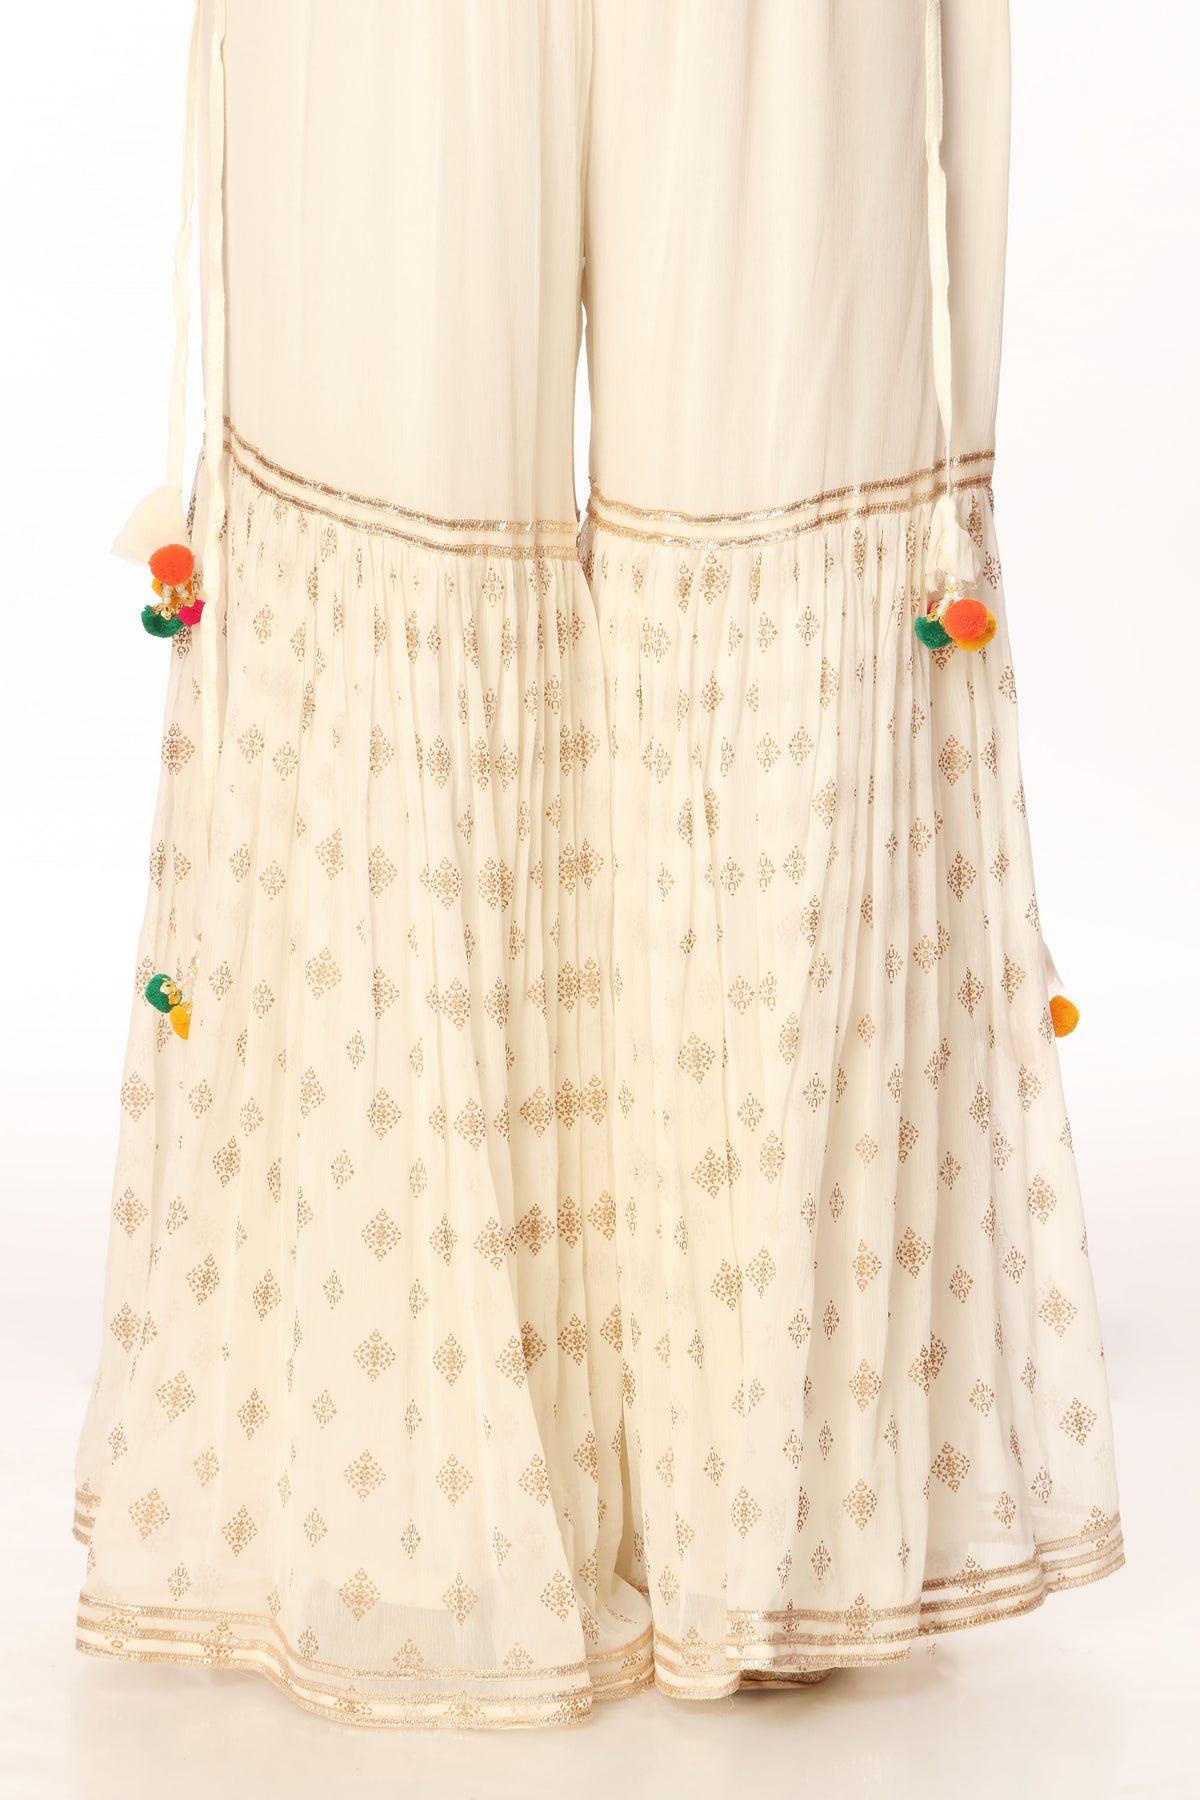 Safaid Kinari in Off White coloured Printed Lawn fabric